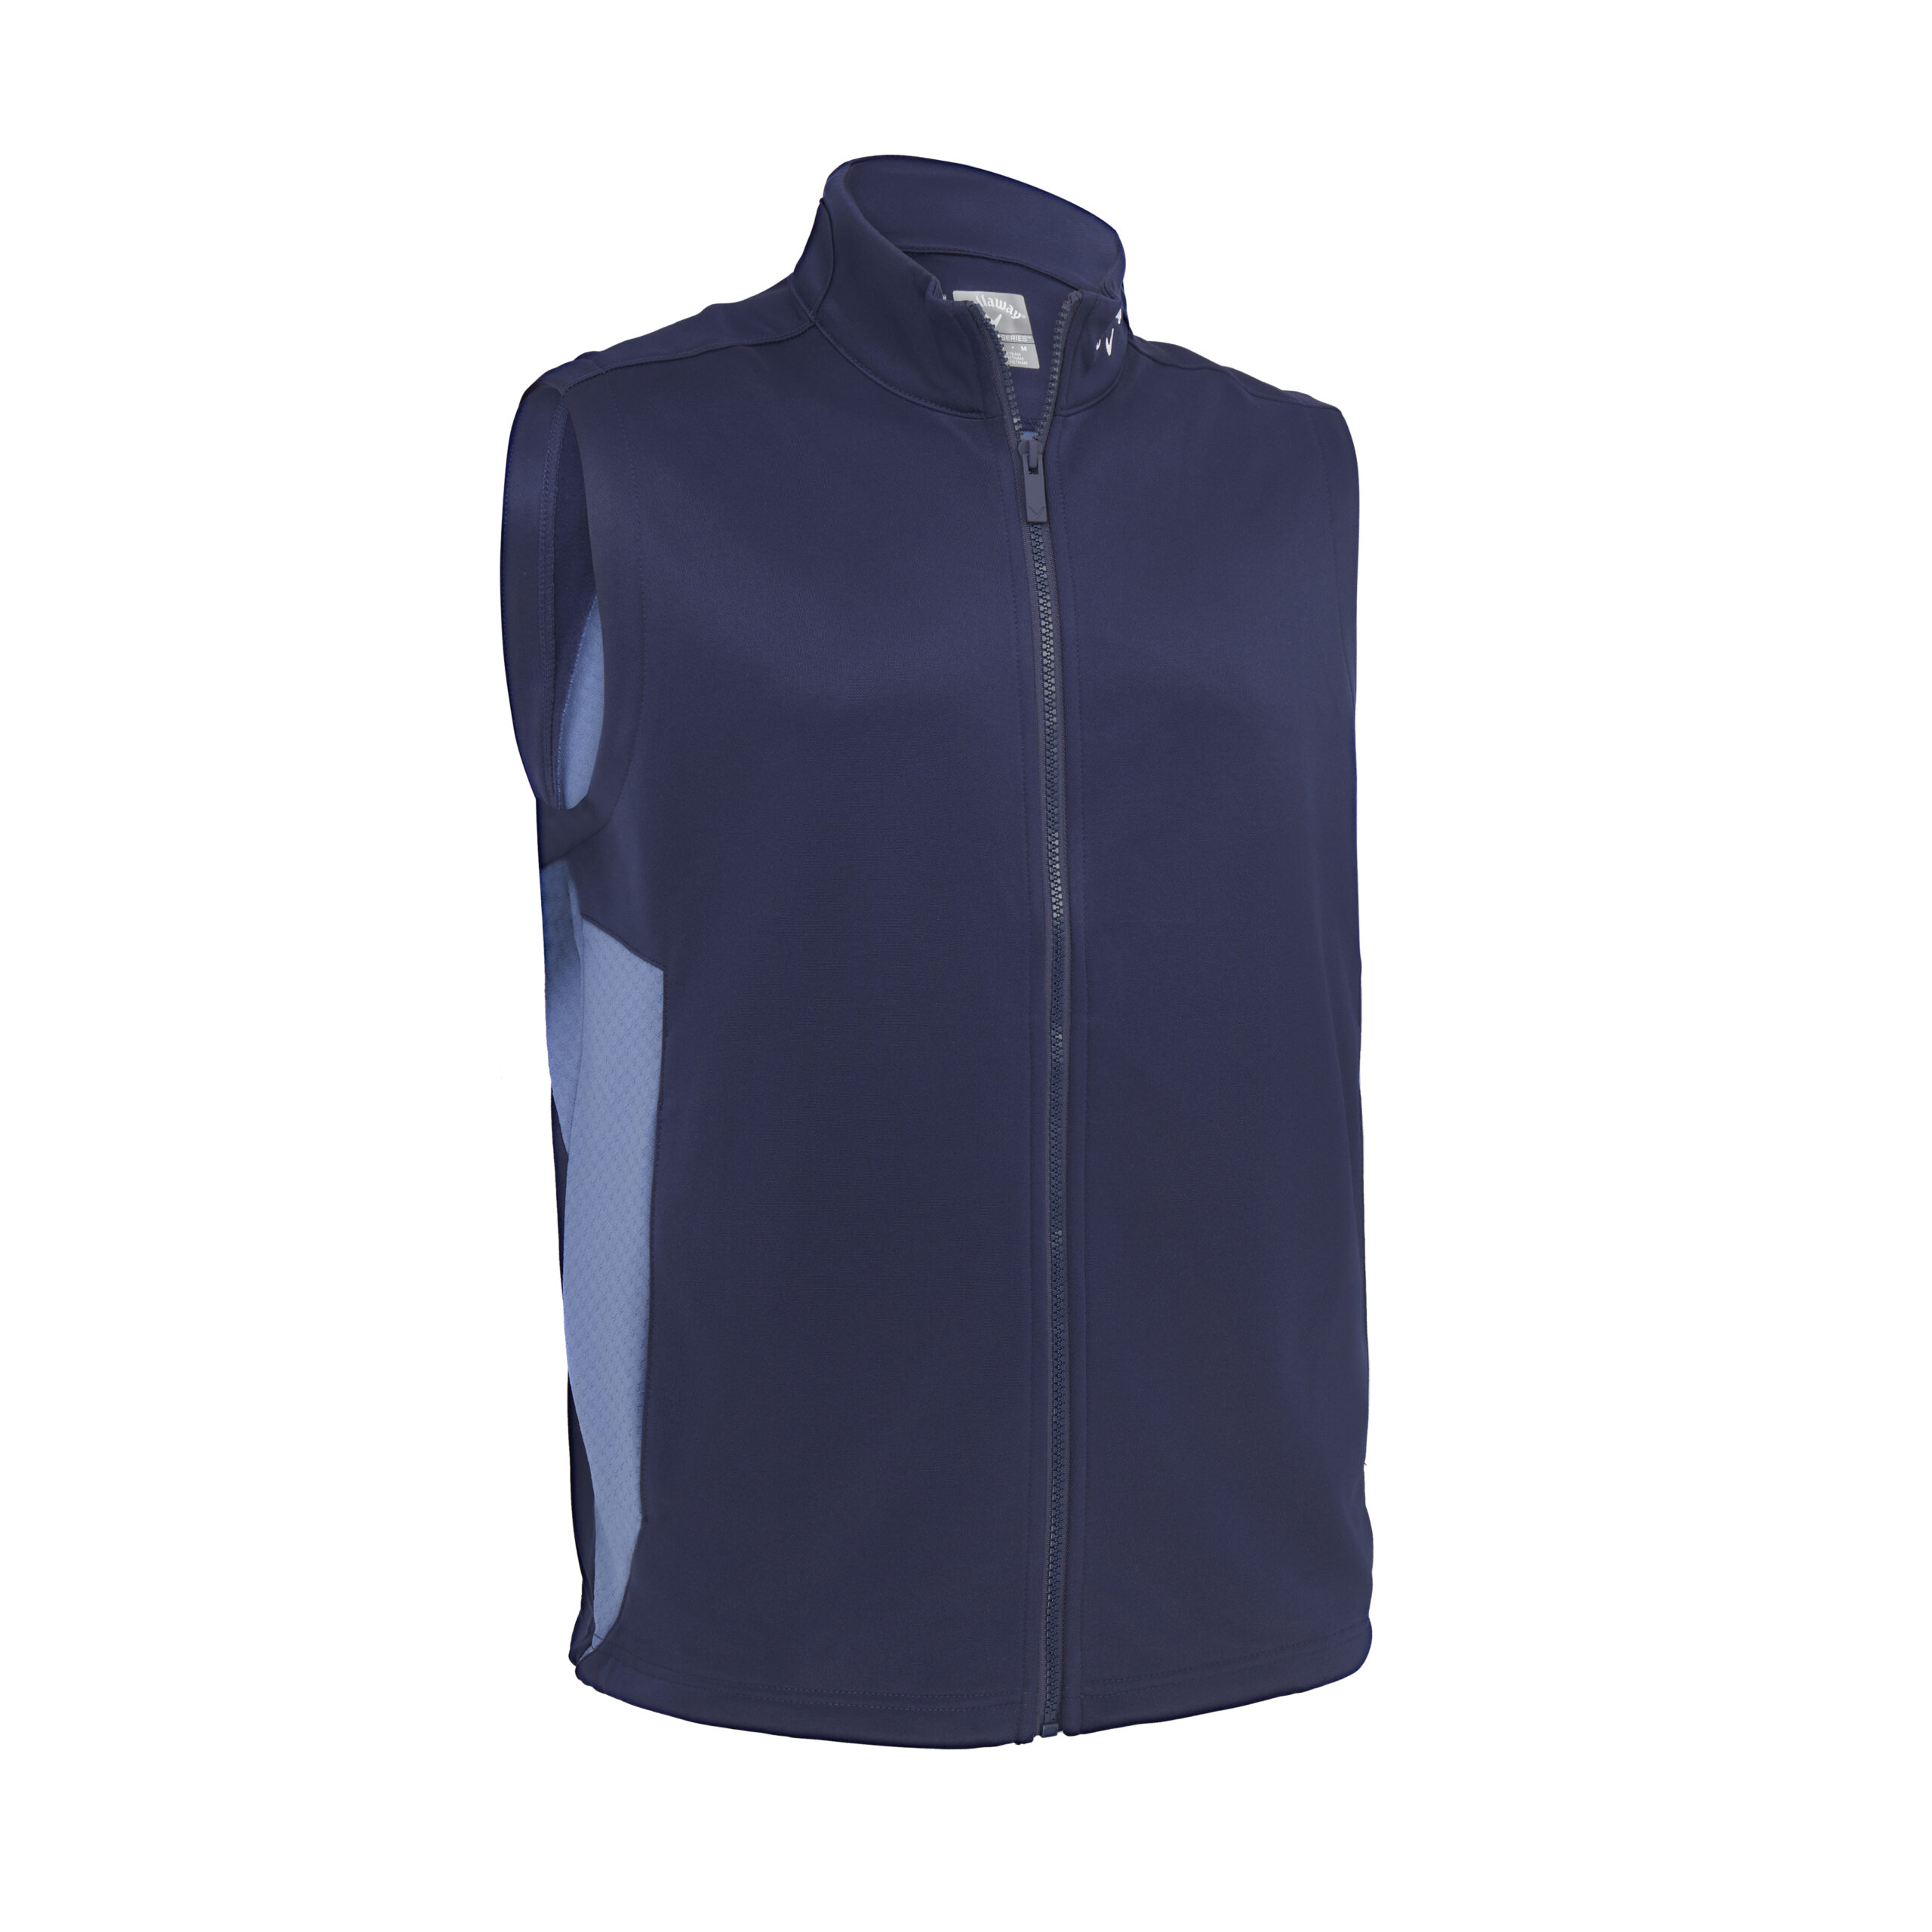 Levně Callaway Chev Textured pánská golfová vesta, tmavě modrá